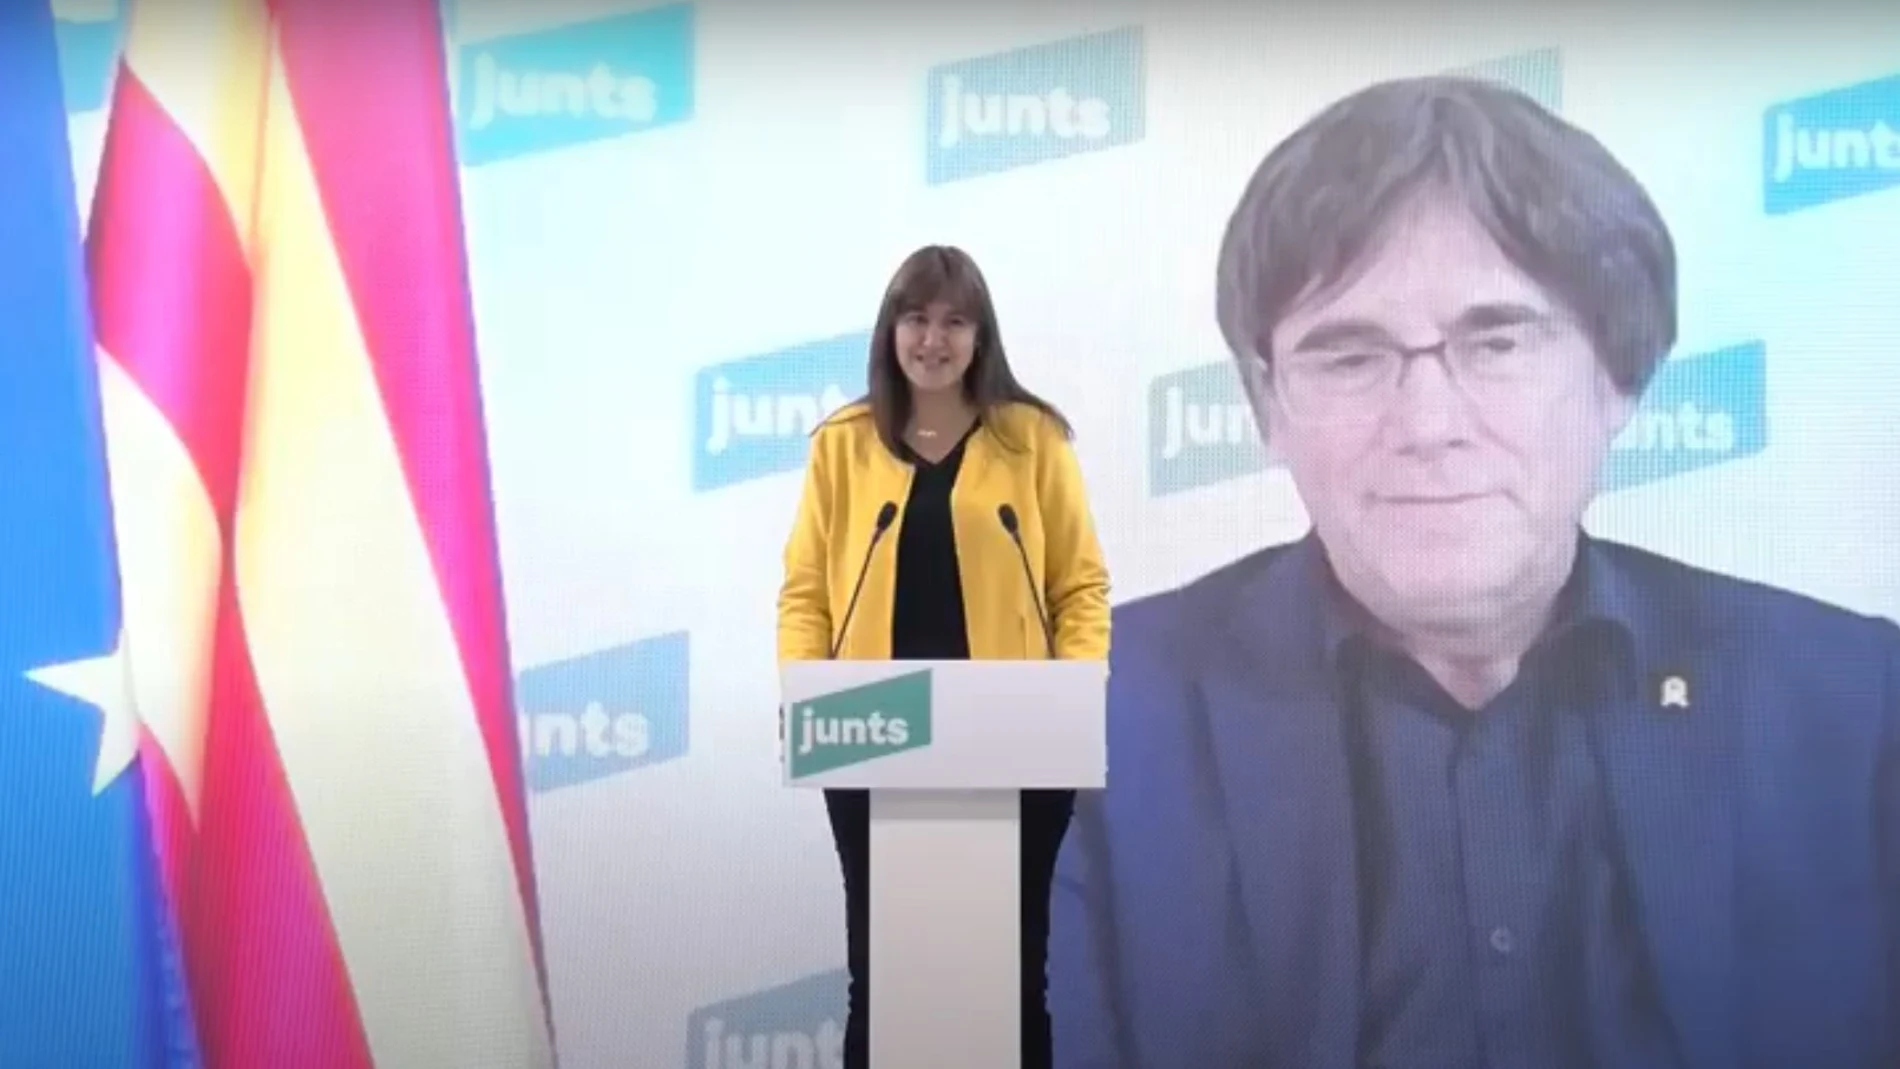 Laura Borràs interviene ante la presencia de Carles Puigdemont por videoconferencia